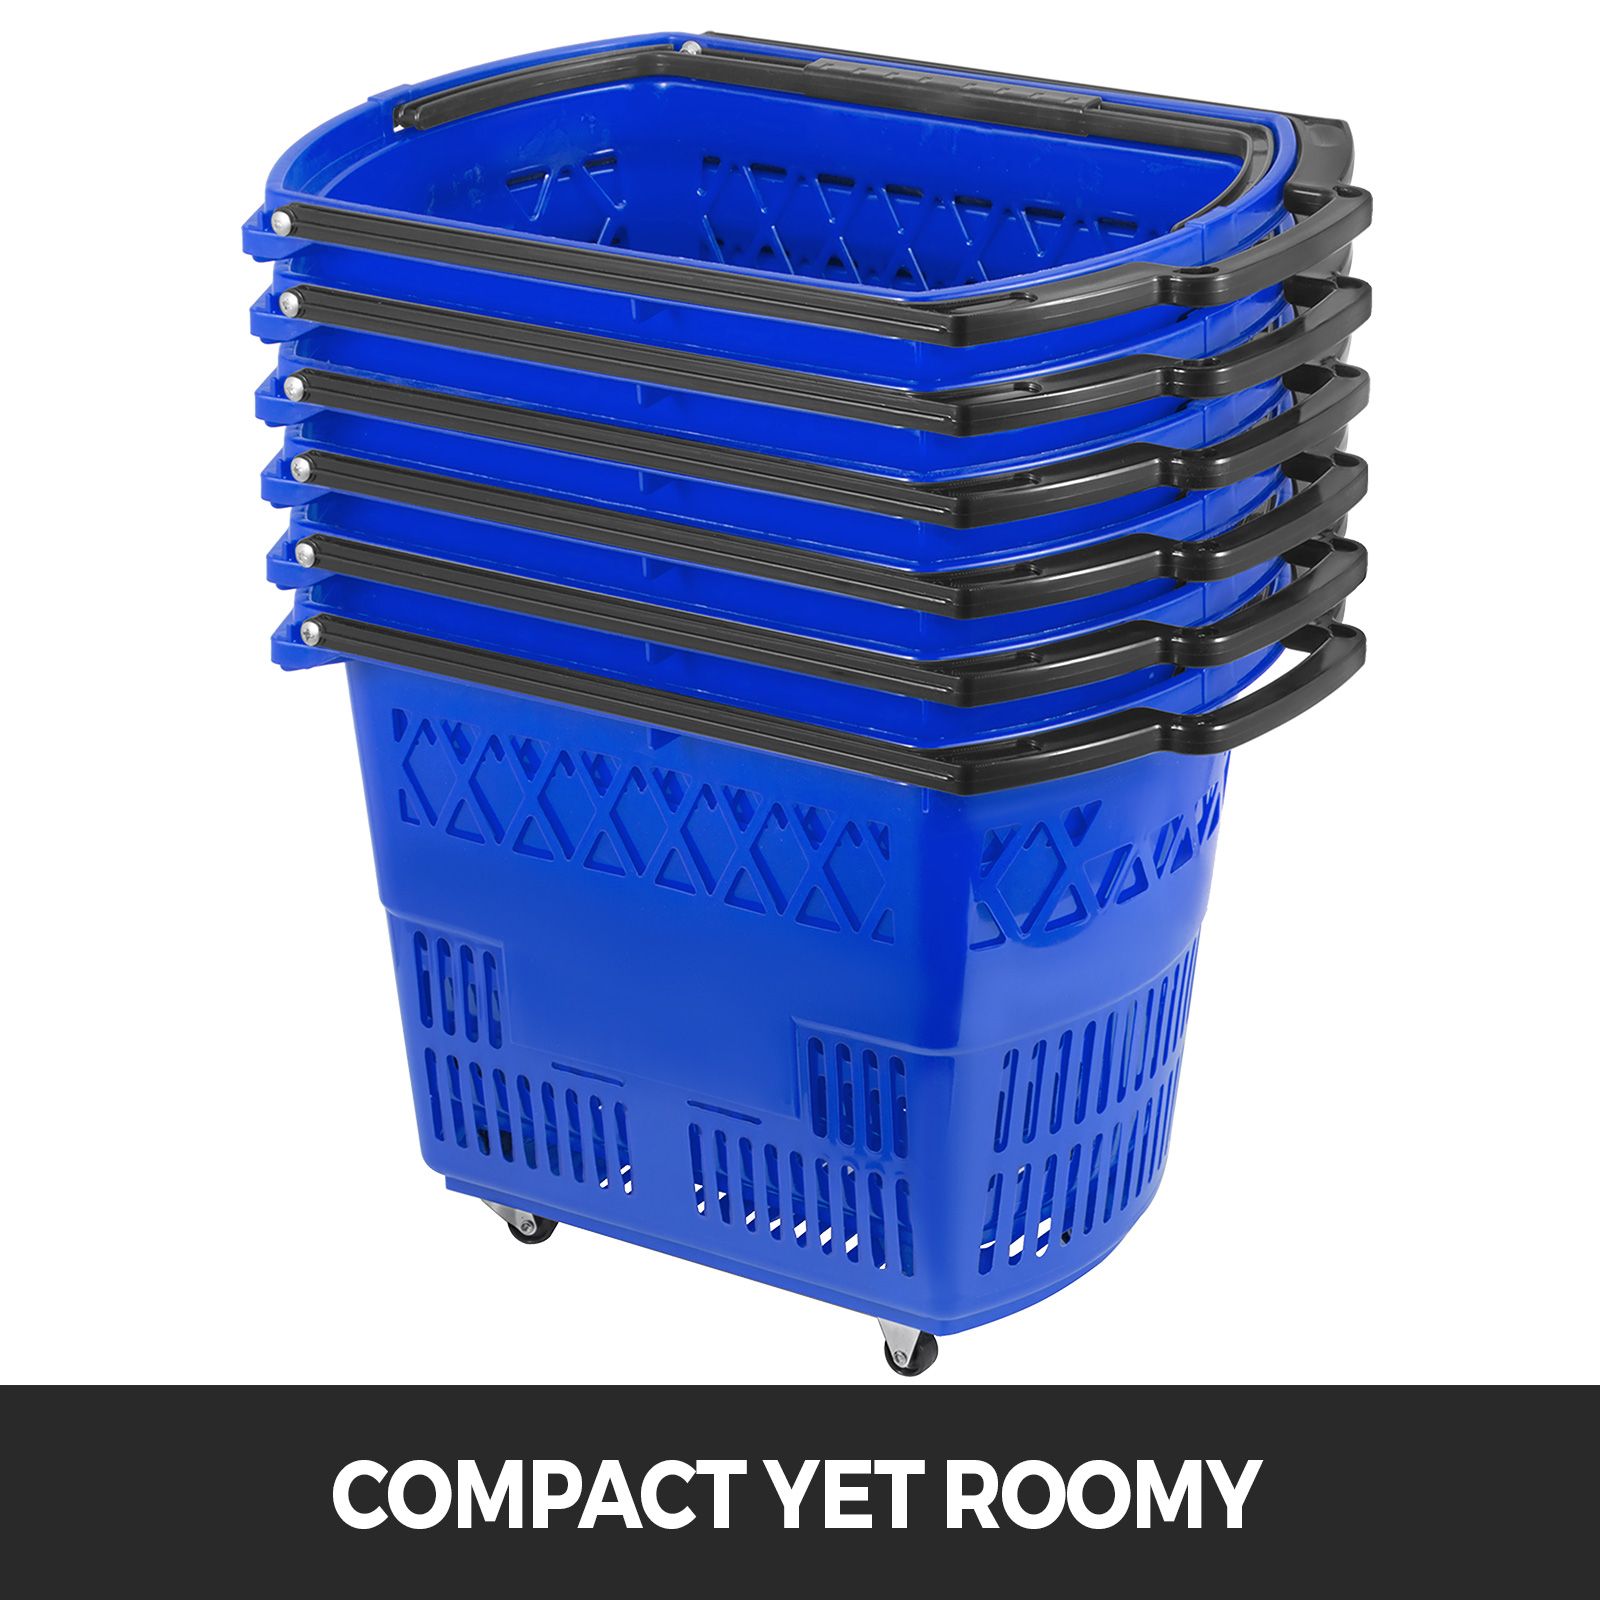 market baskets Plastic Storage Organizer Basket